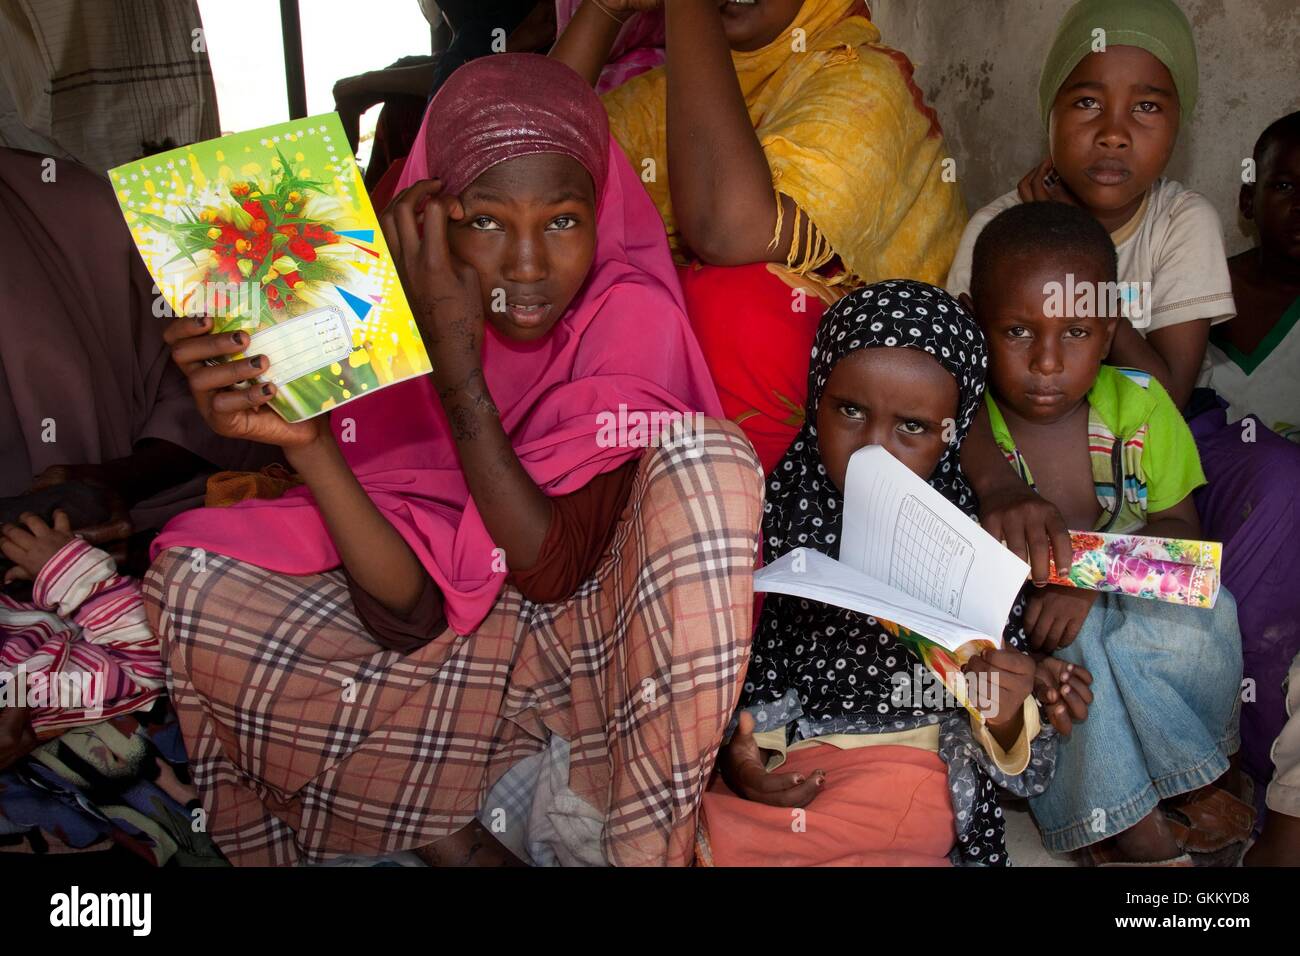 09.10.11, Mogadischu, Somalia - kaum erwarten Kinder, der AMISOM medizinisches Personal in der Out-Patienten-Abteilung in Mogadischu, Somalia. Die Hefte, die sie halten ihre Krankengeschichte enthalten und ermöglichen dem Arzt zur Behandlung von wiederkehrender Patienten schneller. Stockfoto